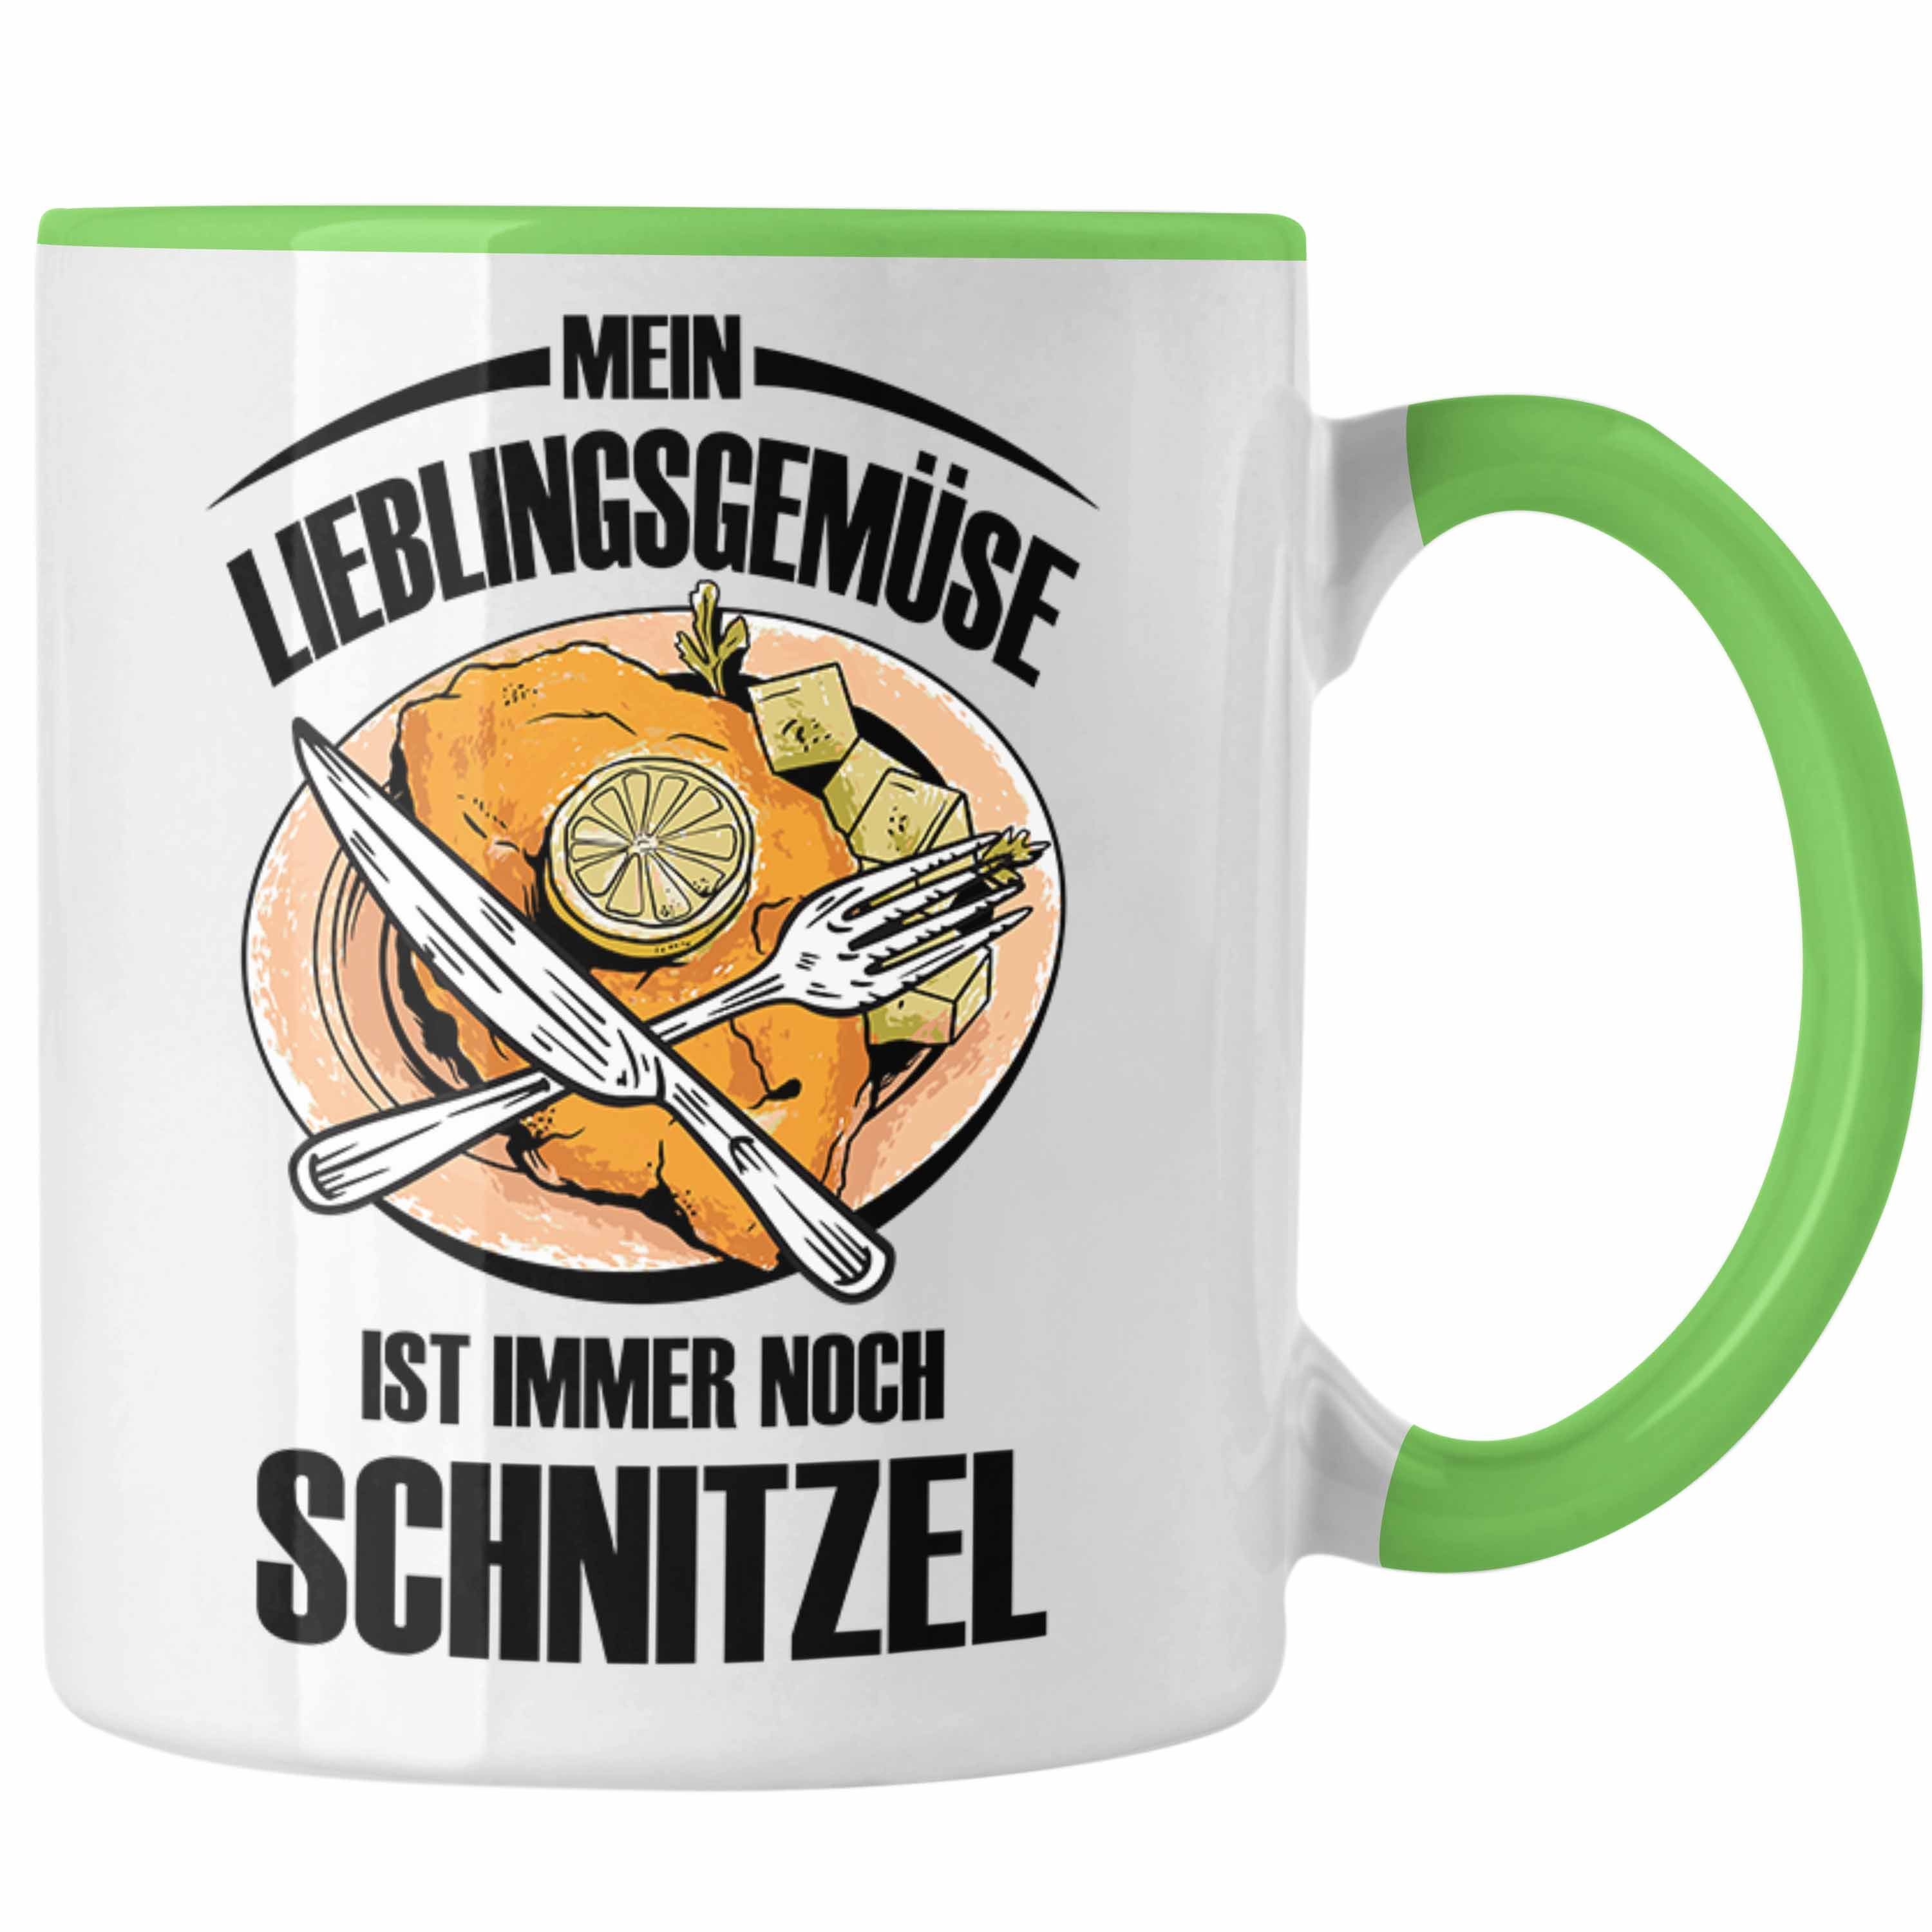 Trendation Tasse Schnitzel-Tasse Lieblingsgemüse für Mein Grün Schnitzel-Liebhaber Geschenk